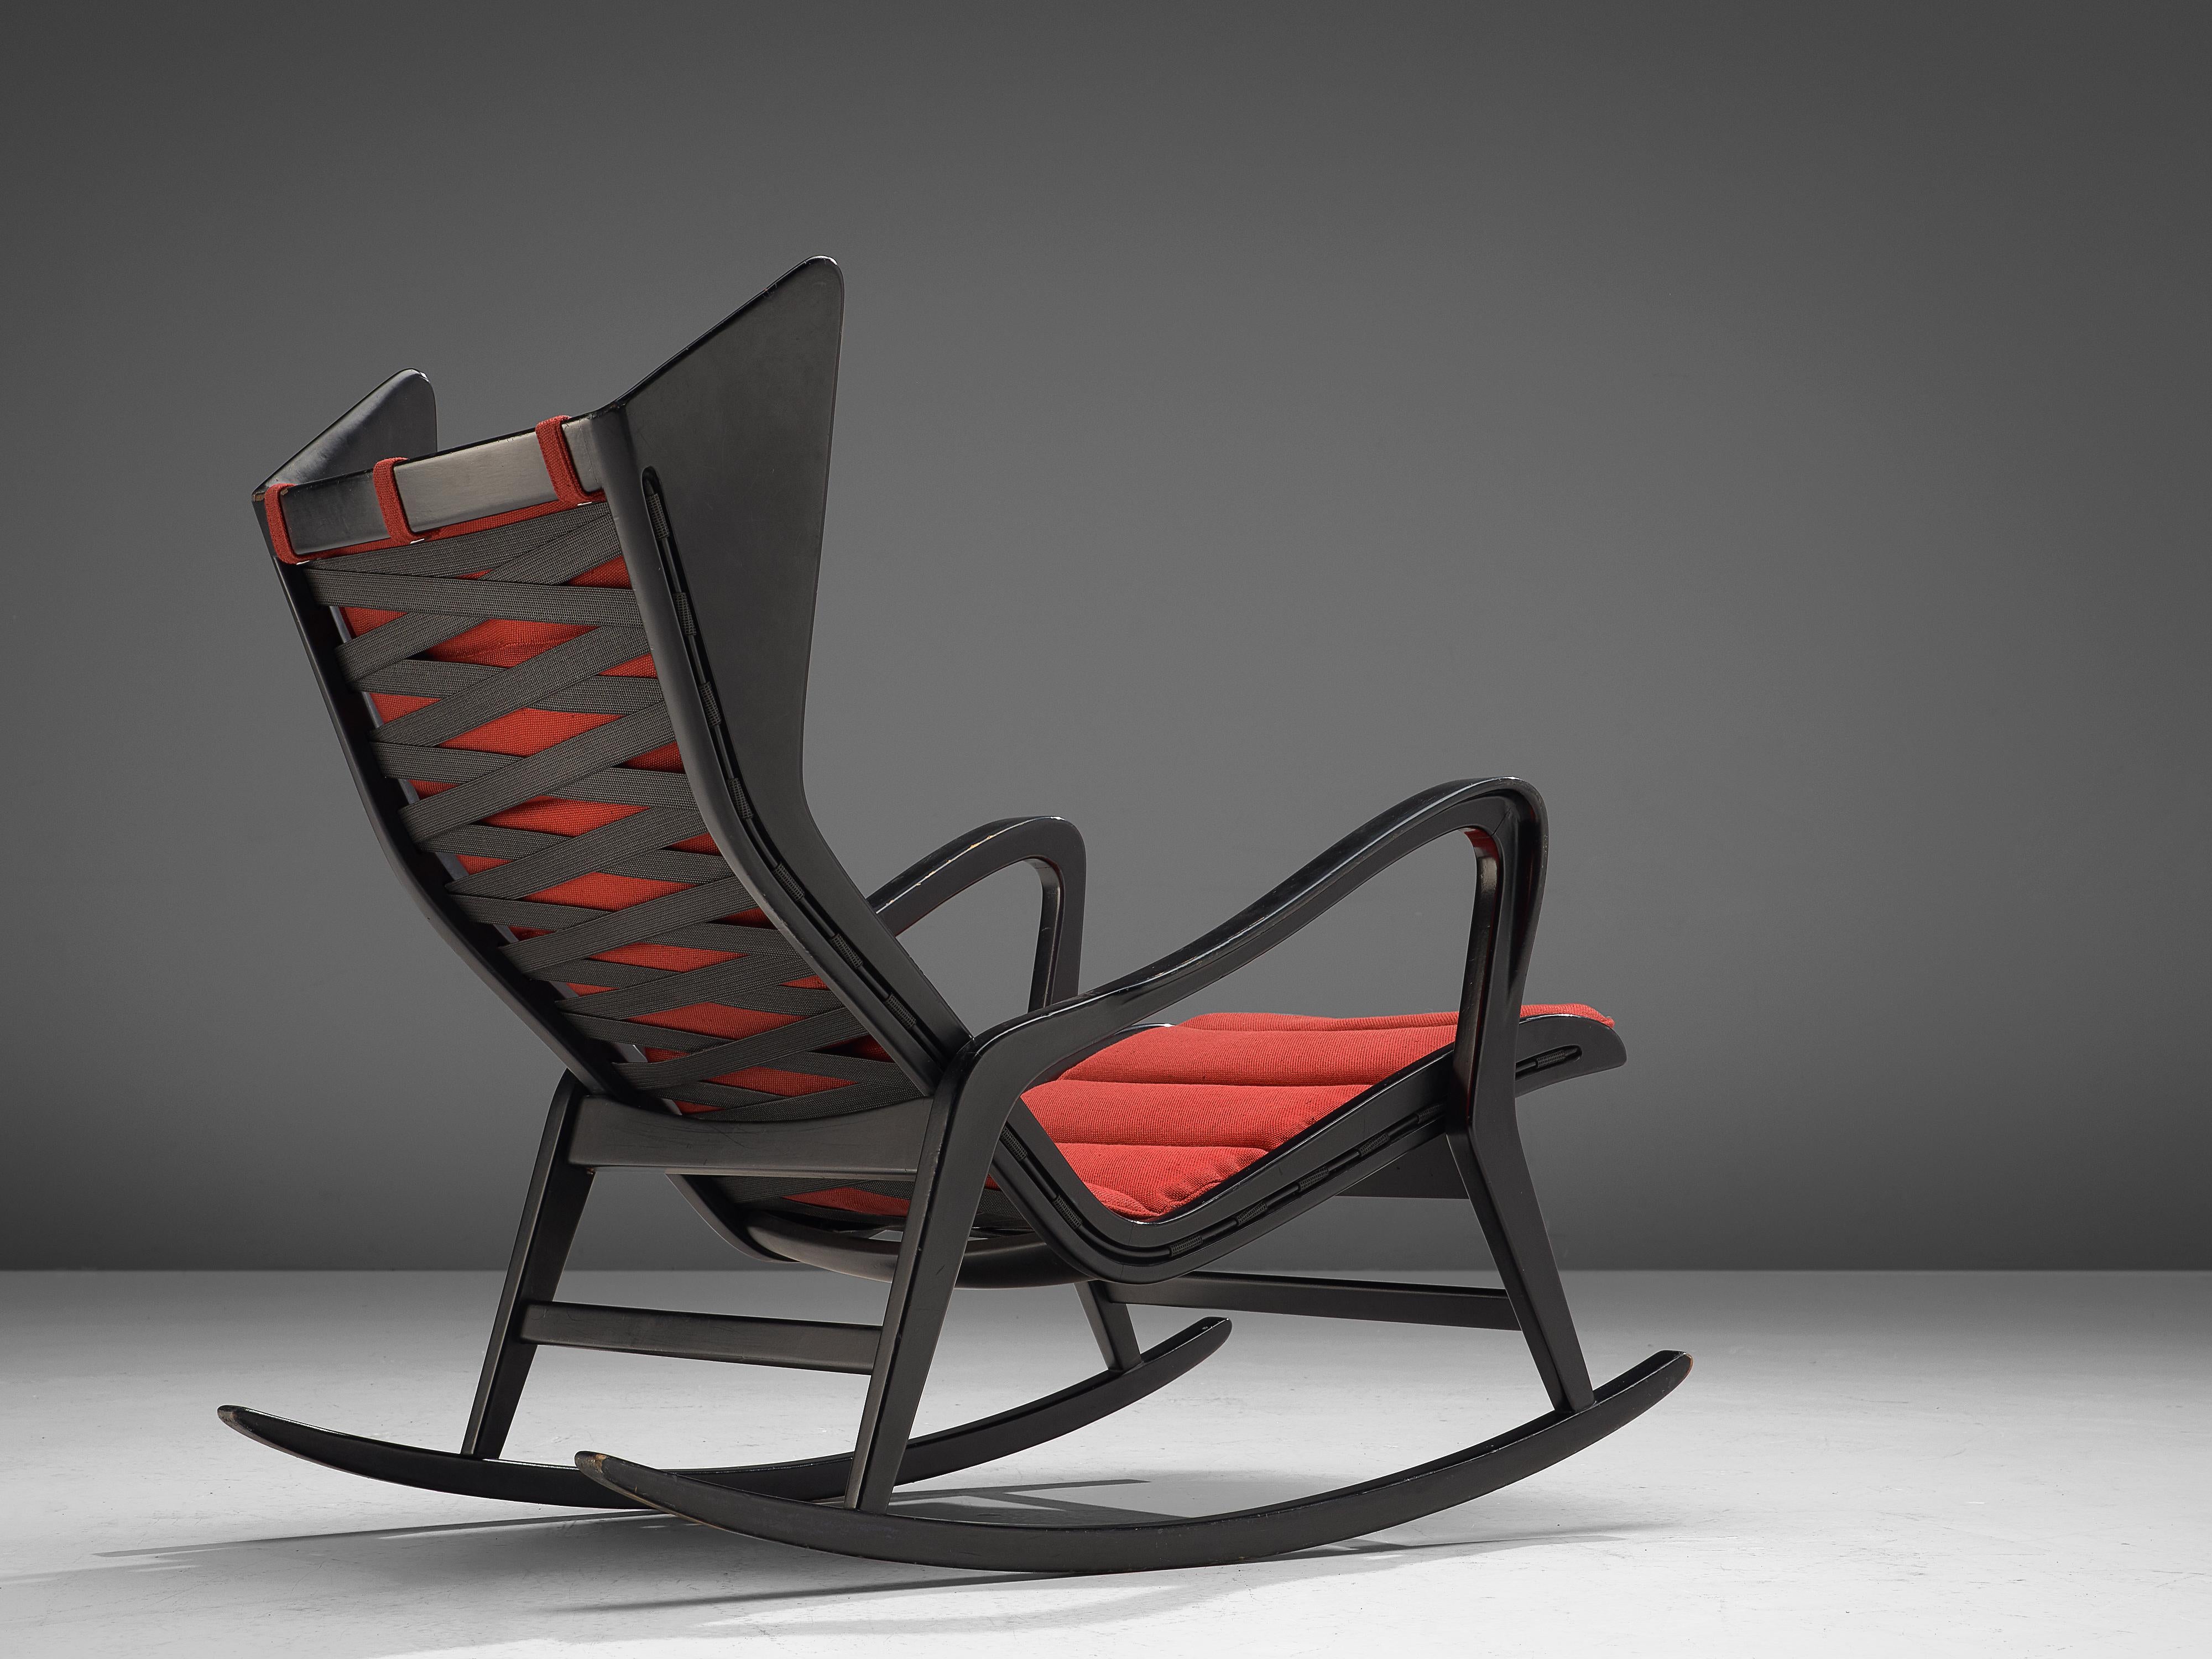 Cassina, chaise longue modèle 572, bois foncé et tissu rouge, Italie, années 1950.

Ce rocking-chair en bois ébonisé est conçu et produit par l'entreprise italienne Cassina. Cette chaise est l'exemple même du mobilier italien de haute qualité des